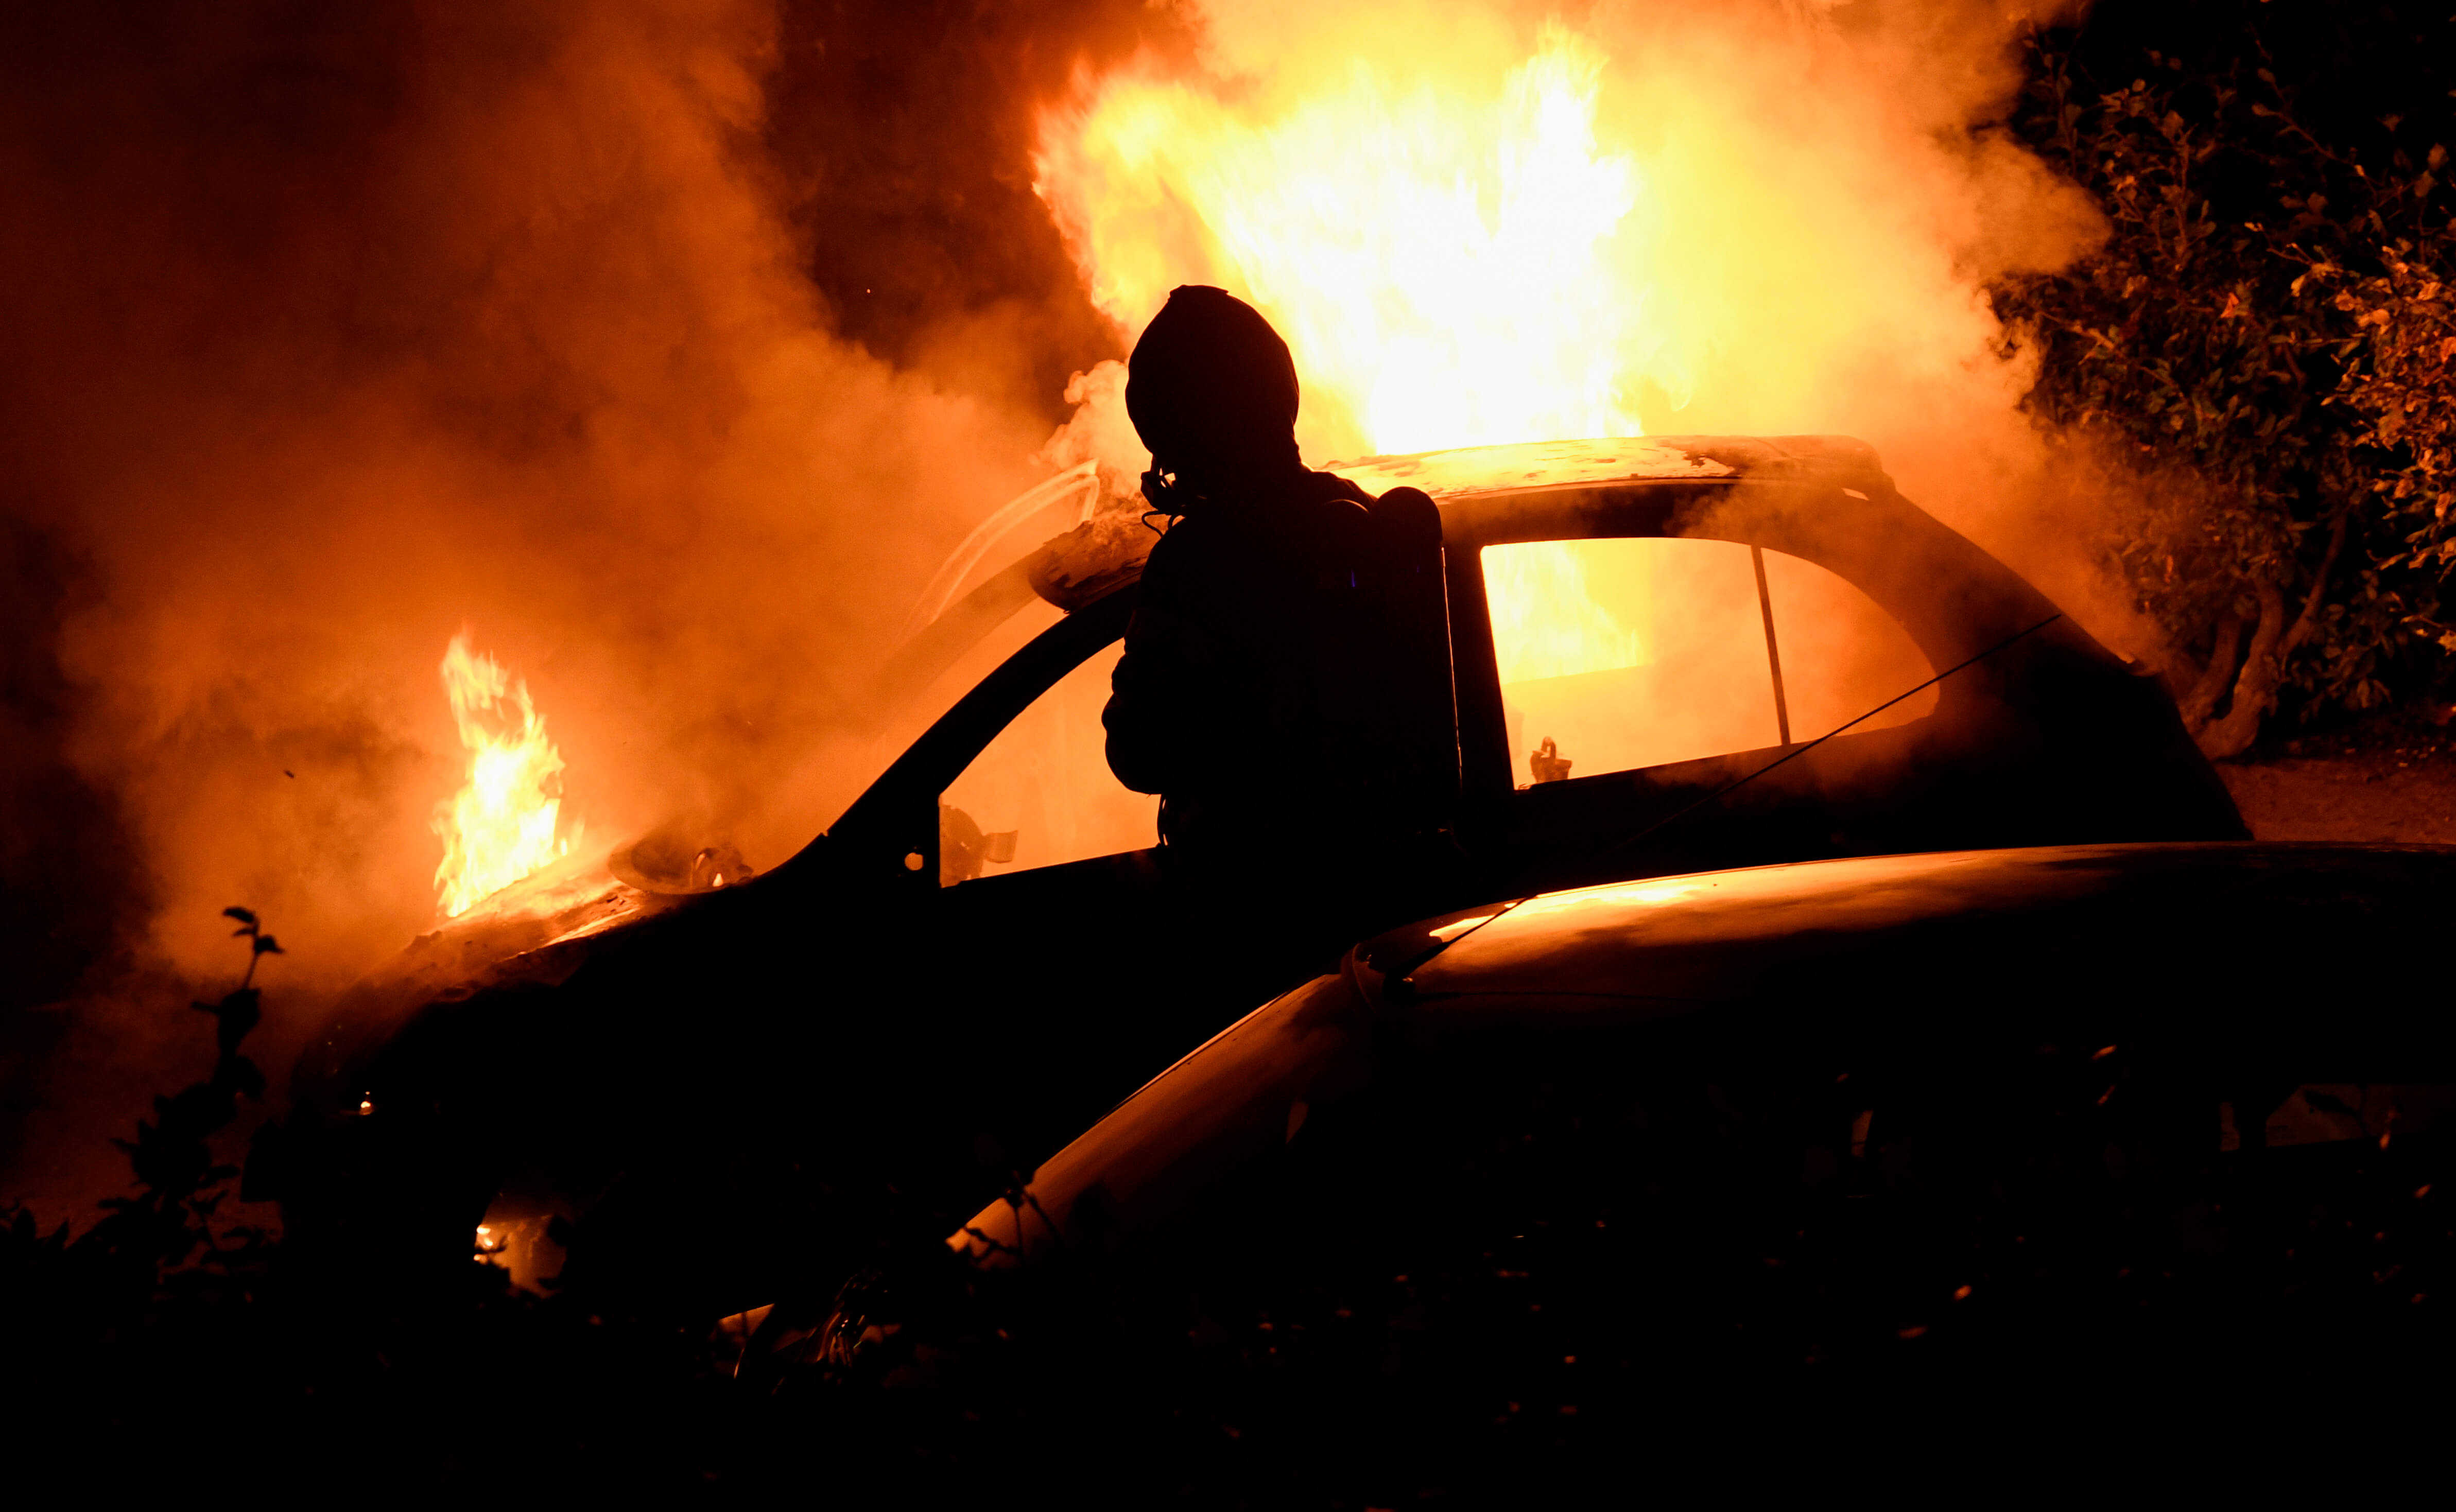 Sedan 1 juni har minst 100 bilbränder skakat Malmö. 